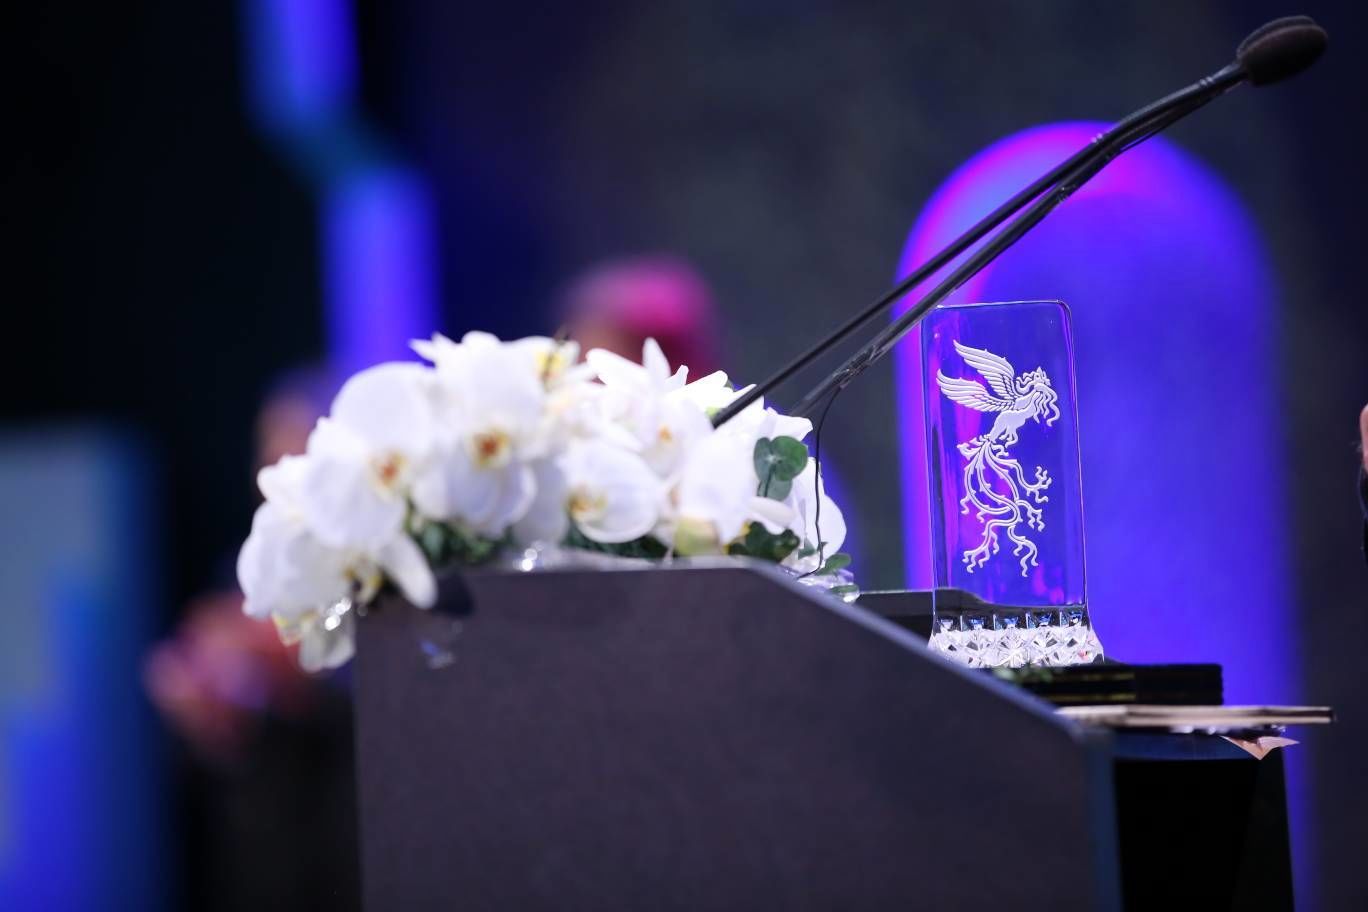 فهرست ریالی جوایز جشنواره فیلم فجر از ۱۳۹٨ تا ۱۴۰۰ / افزایش چشمگیر رقم جوایز در جشنواره امسال